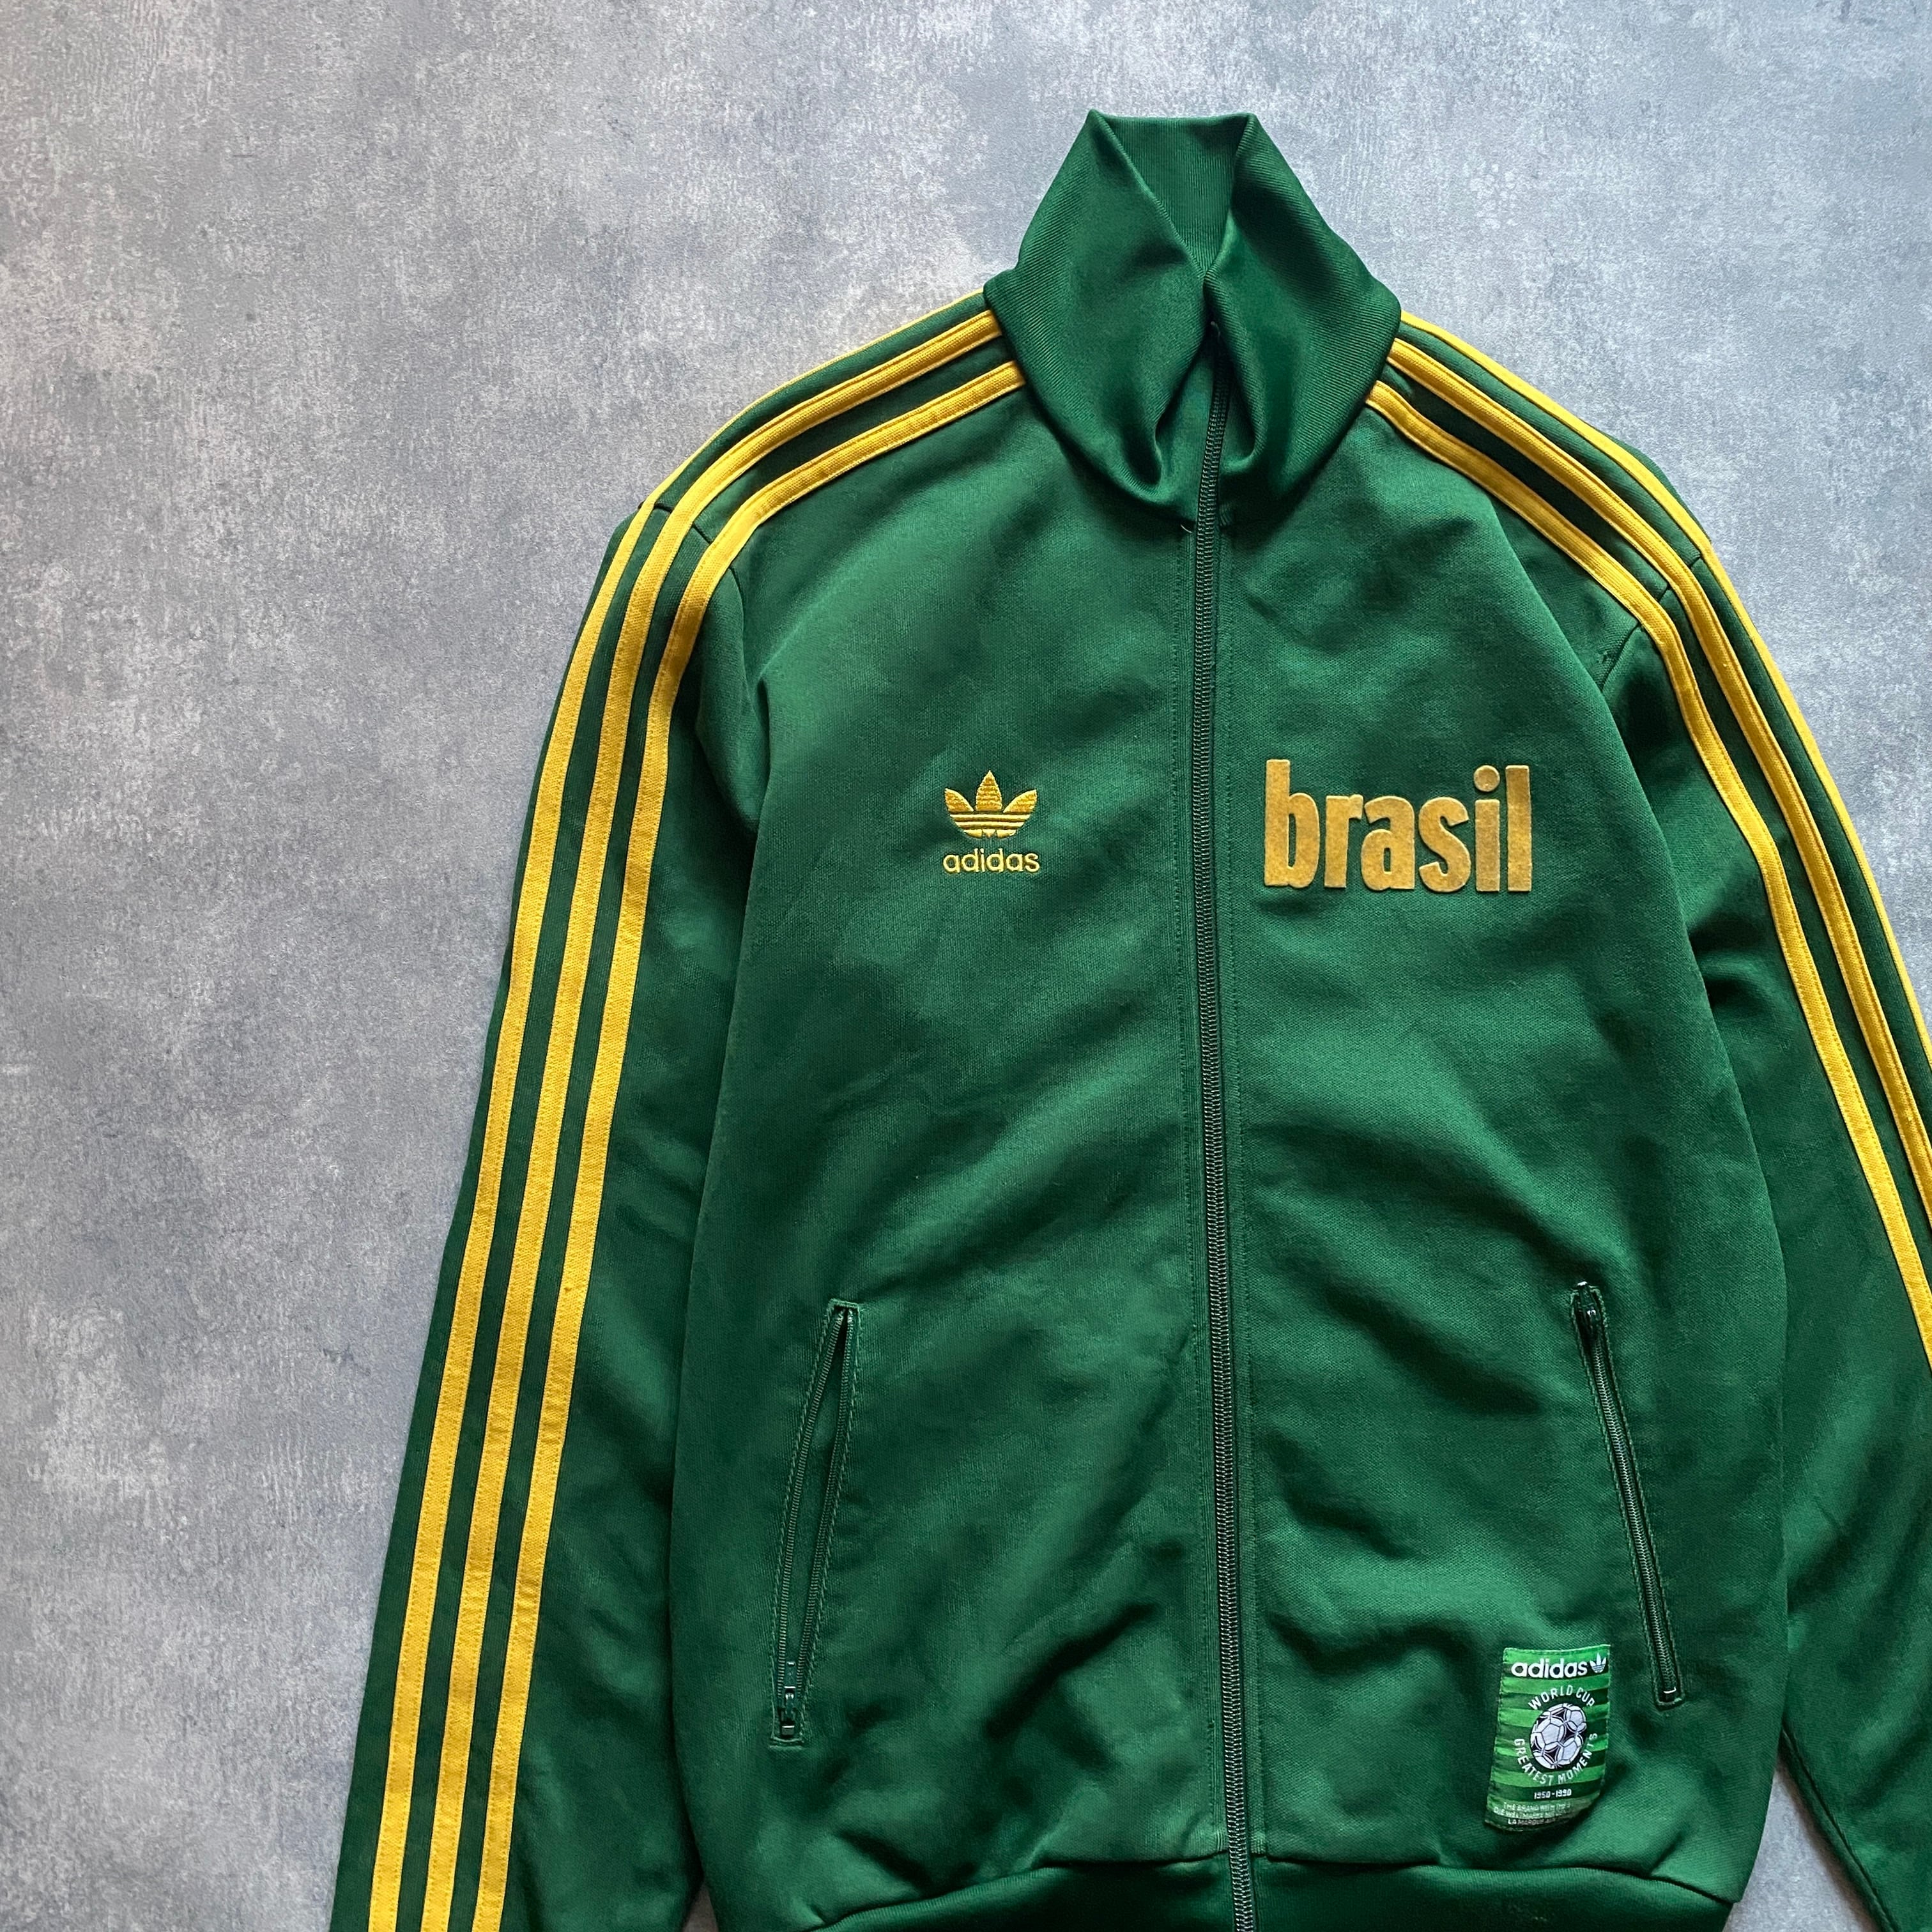 adidas アディダス サッカーブラジル代表デザイン 刺繍バックロゴ